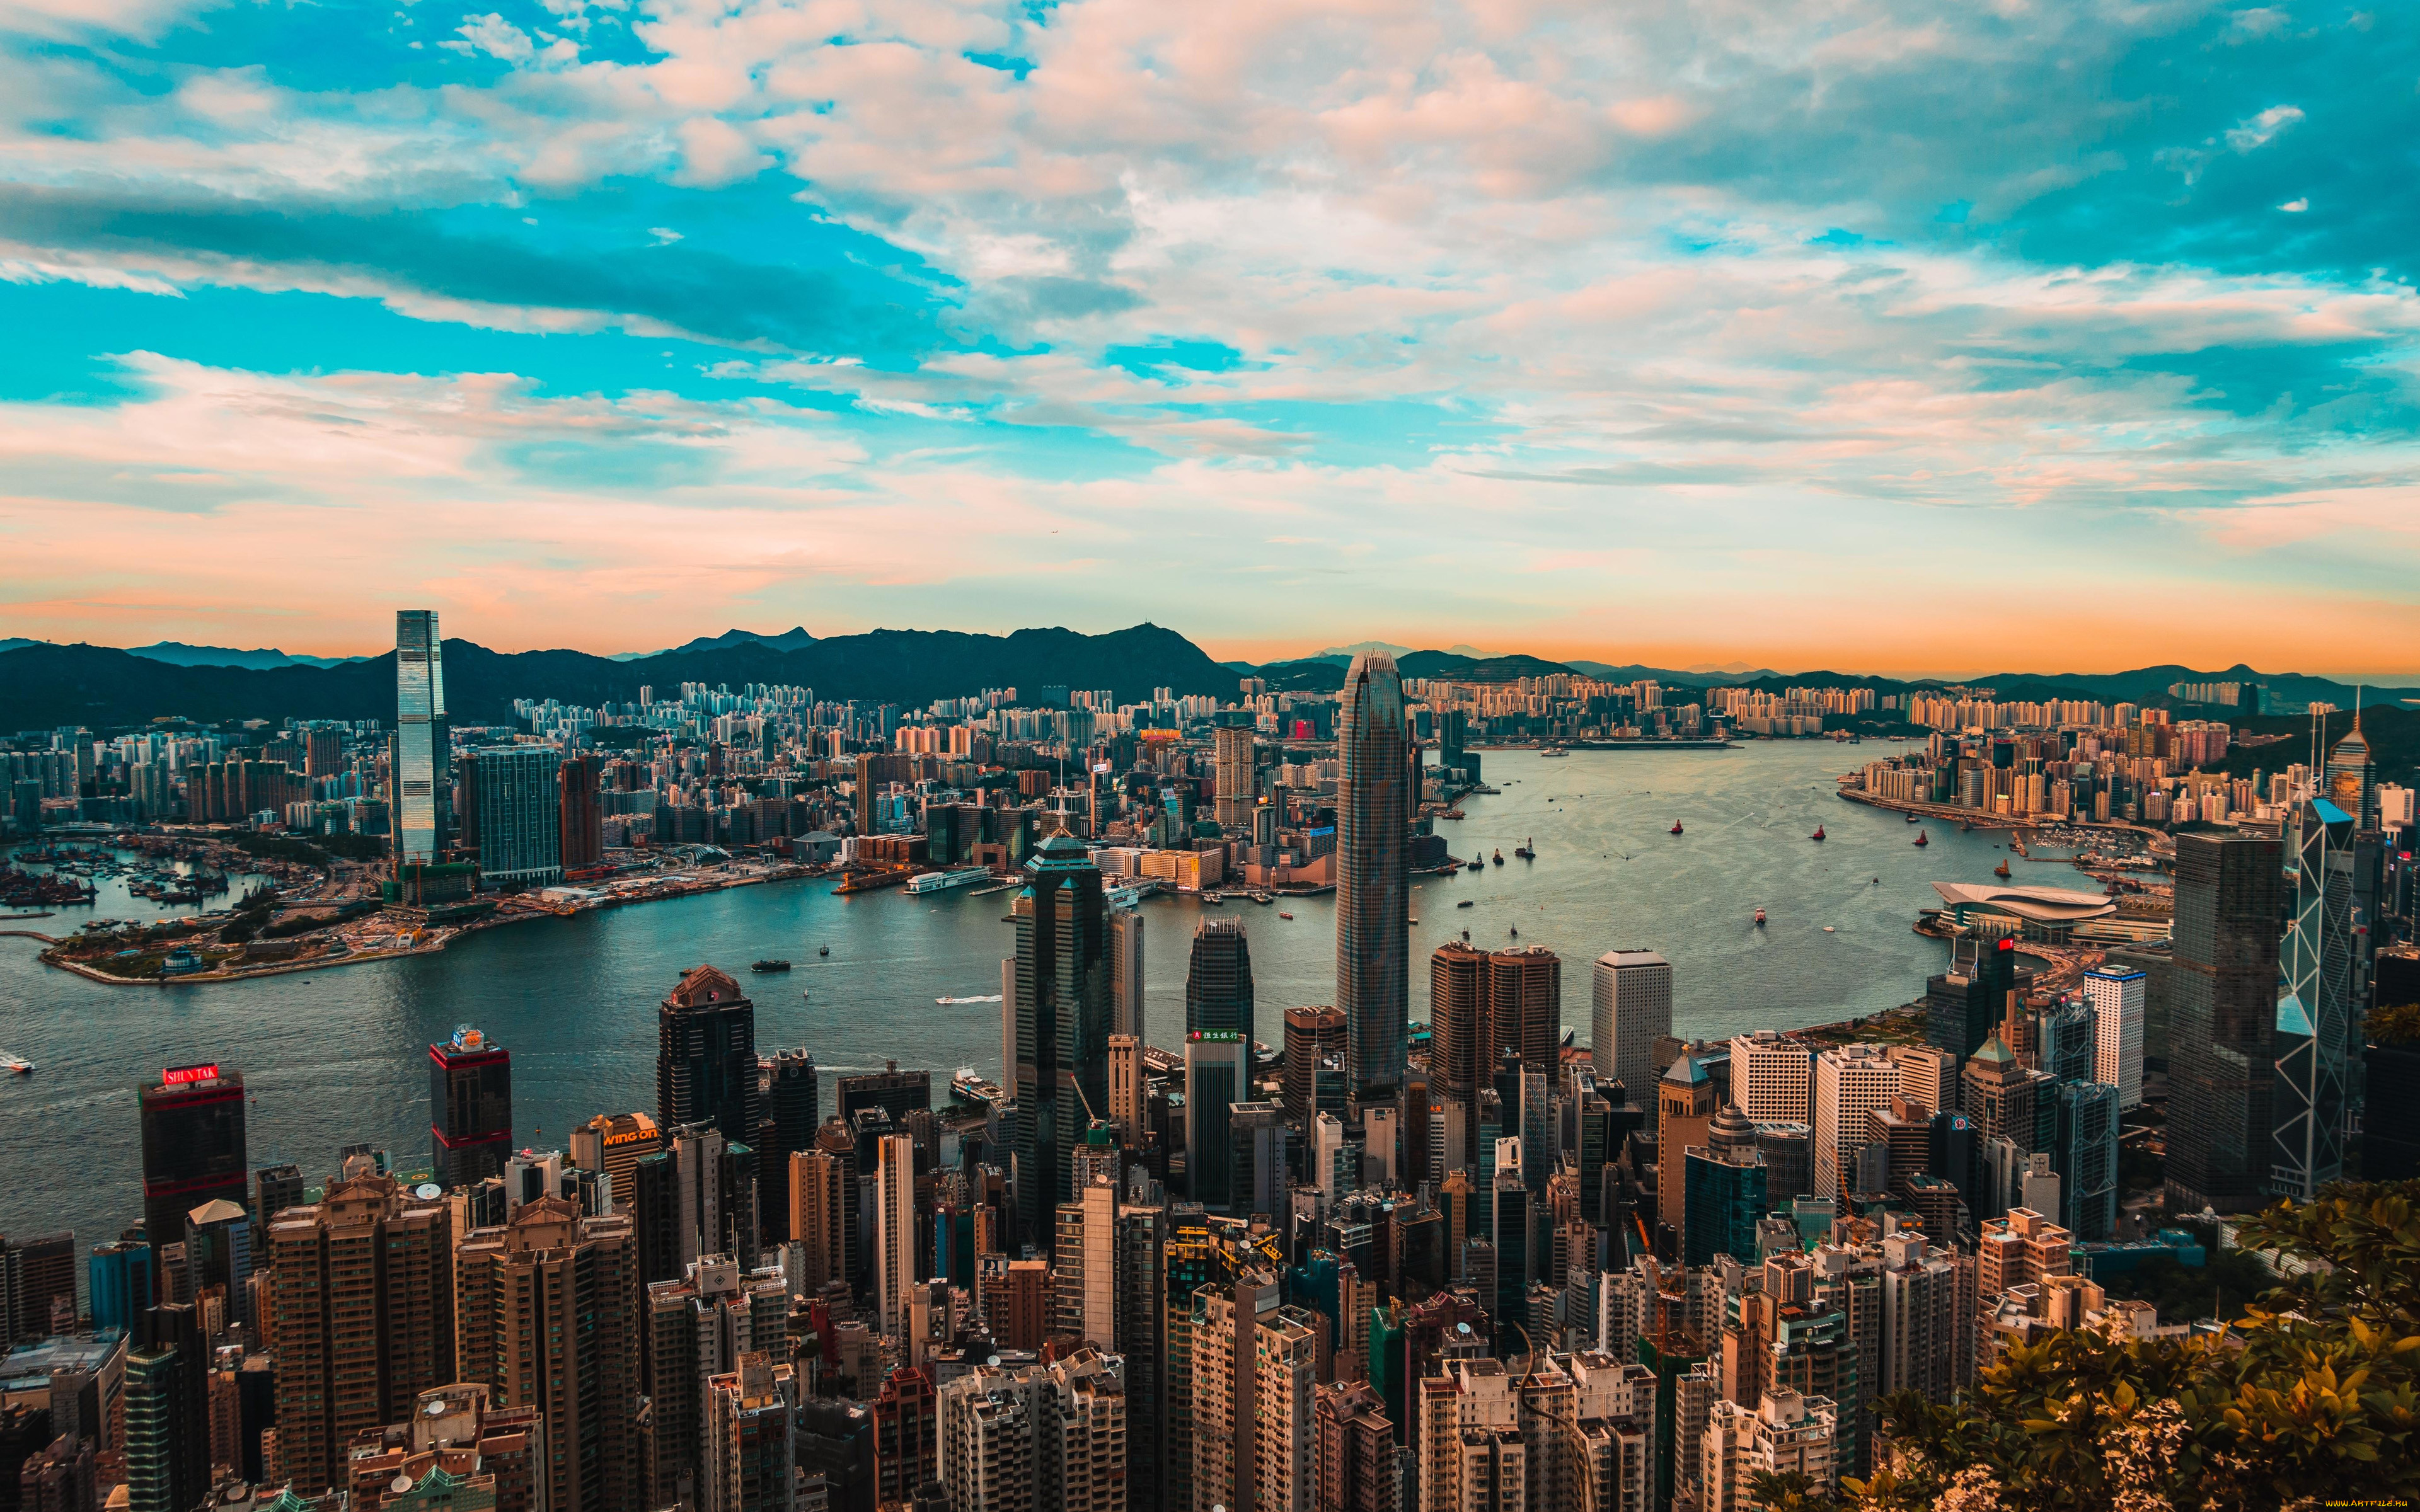 Обои Города Гонконг (Китай), обои для рабочего стола, фотографии города,  гонконг , китай, гонконг, вечером, 4k, мегаполис, небоскребы, современные,  здания, азиатские Обои для рабочего стола, скачать обои картинки заставки  на рабочий стол.